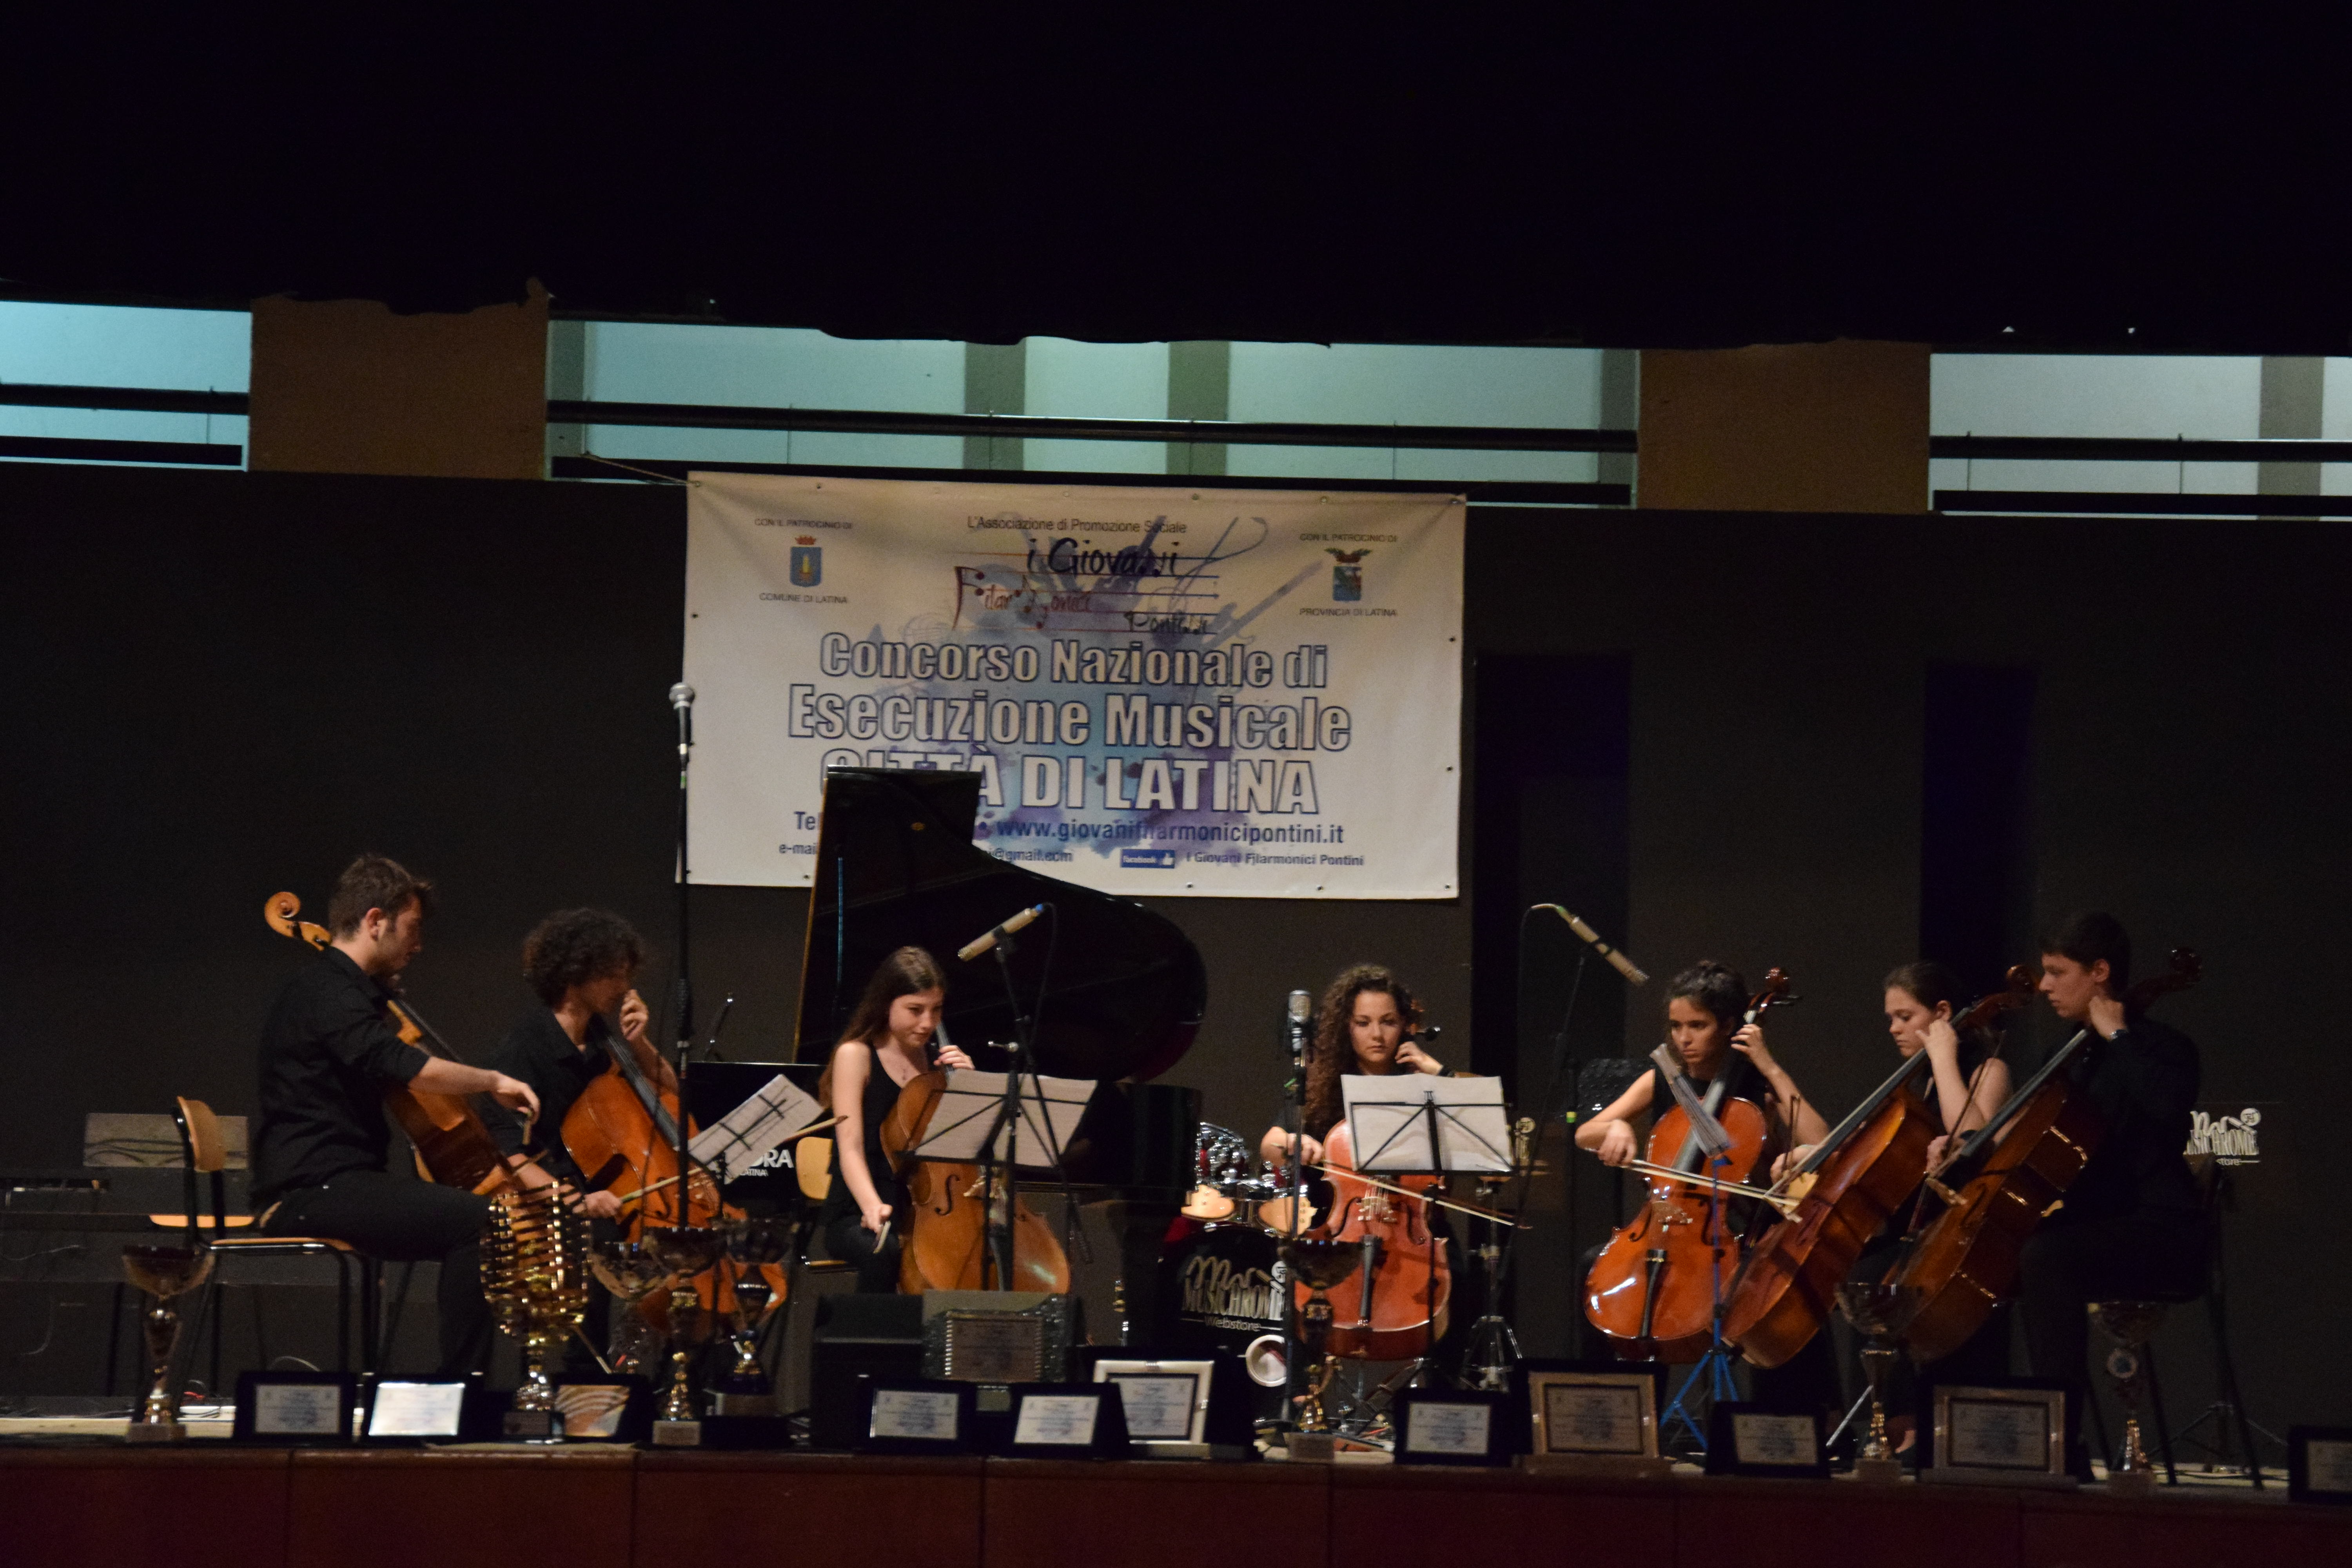 Iniziate le selezioni del 4º Concorso Nazionale di Esecuzione Musicale “Città di Latina”